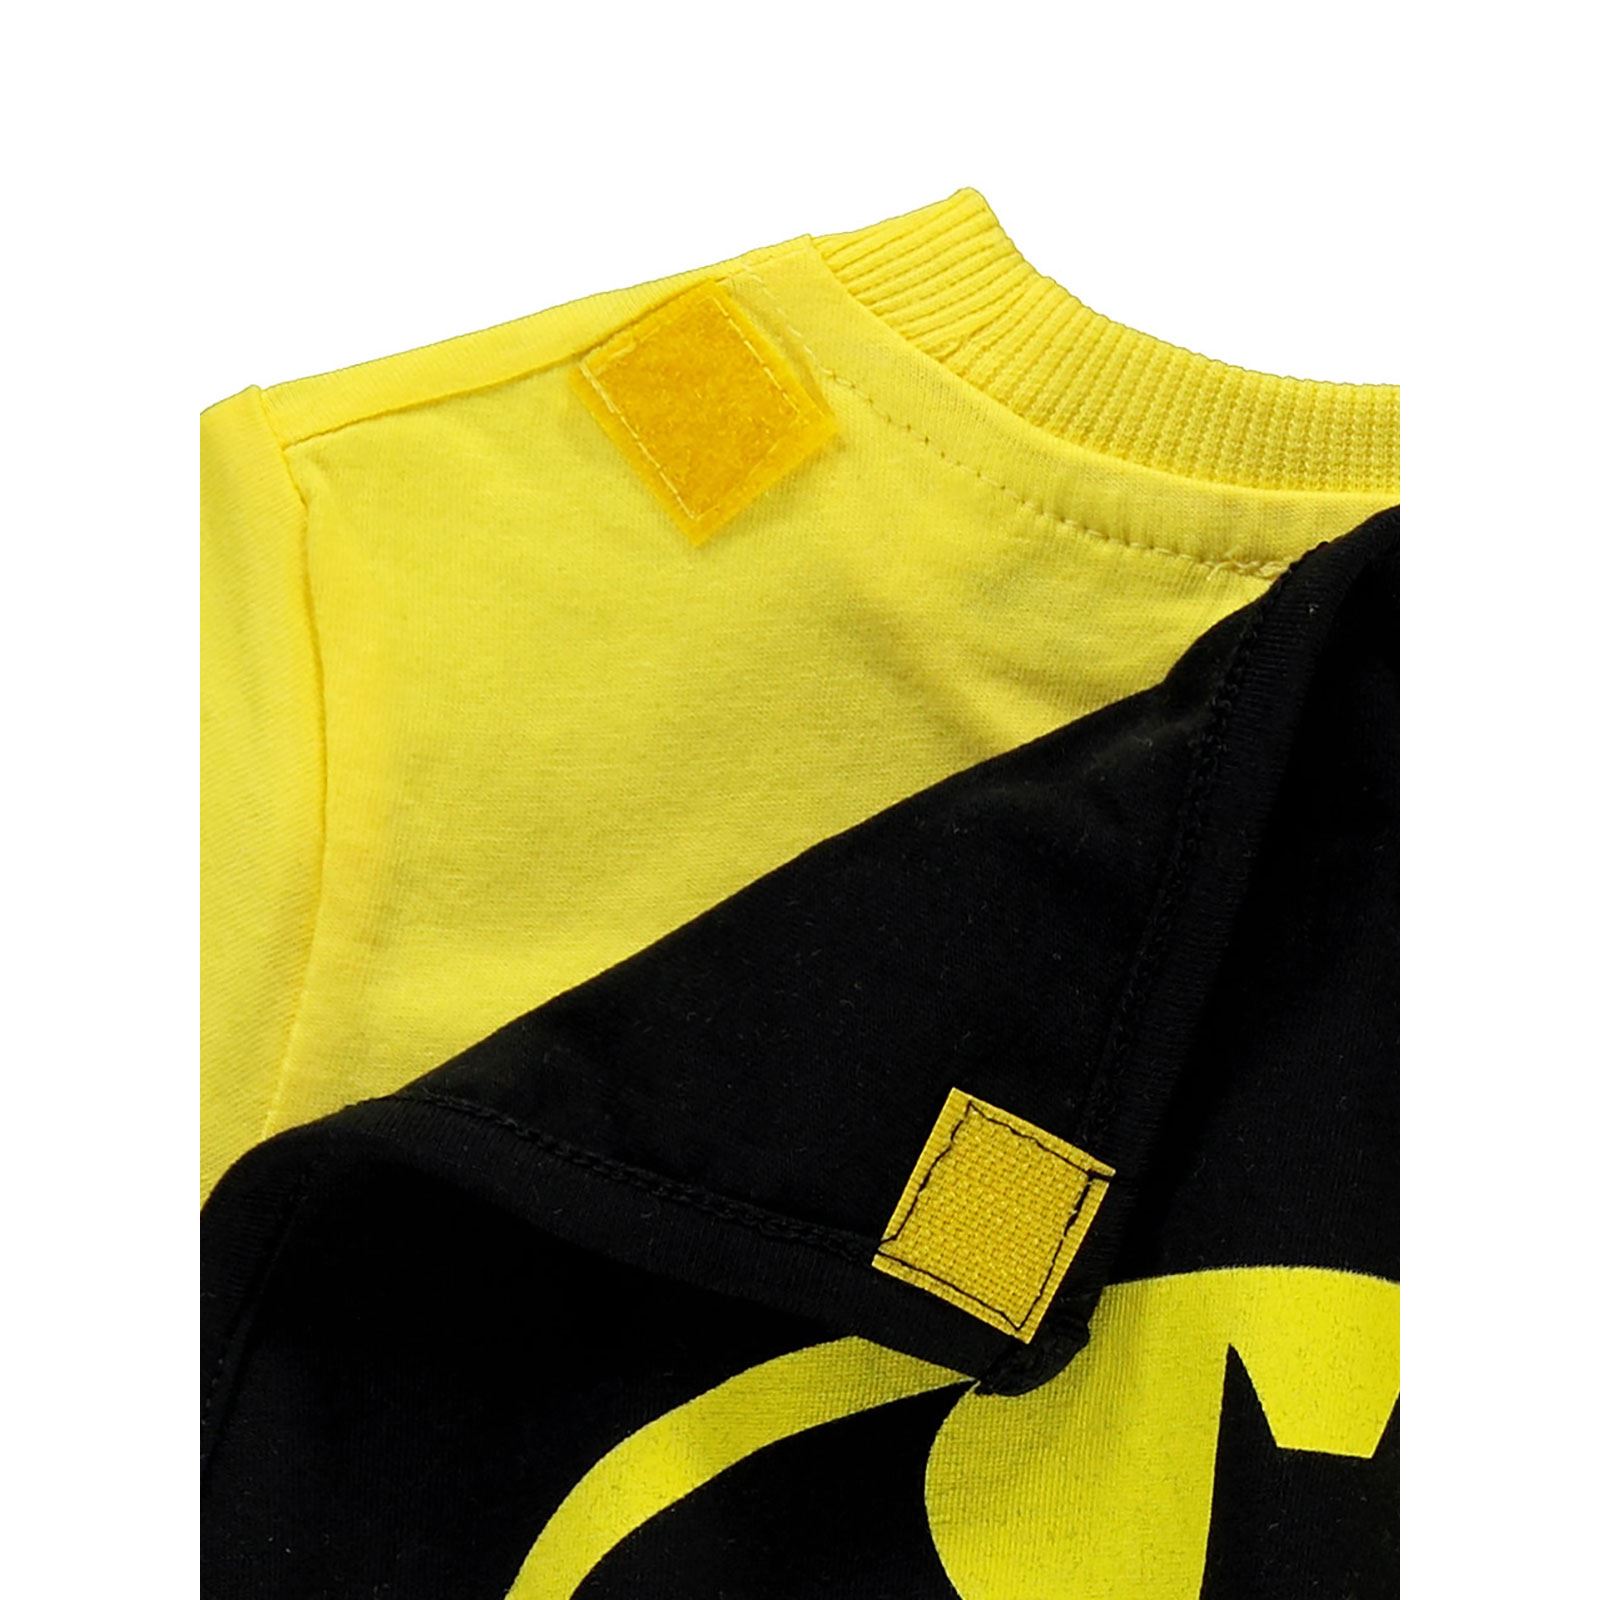 Batman Erkek Çocuk Pelerinli Tişört 2-5 Yaş Sarı